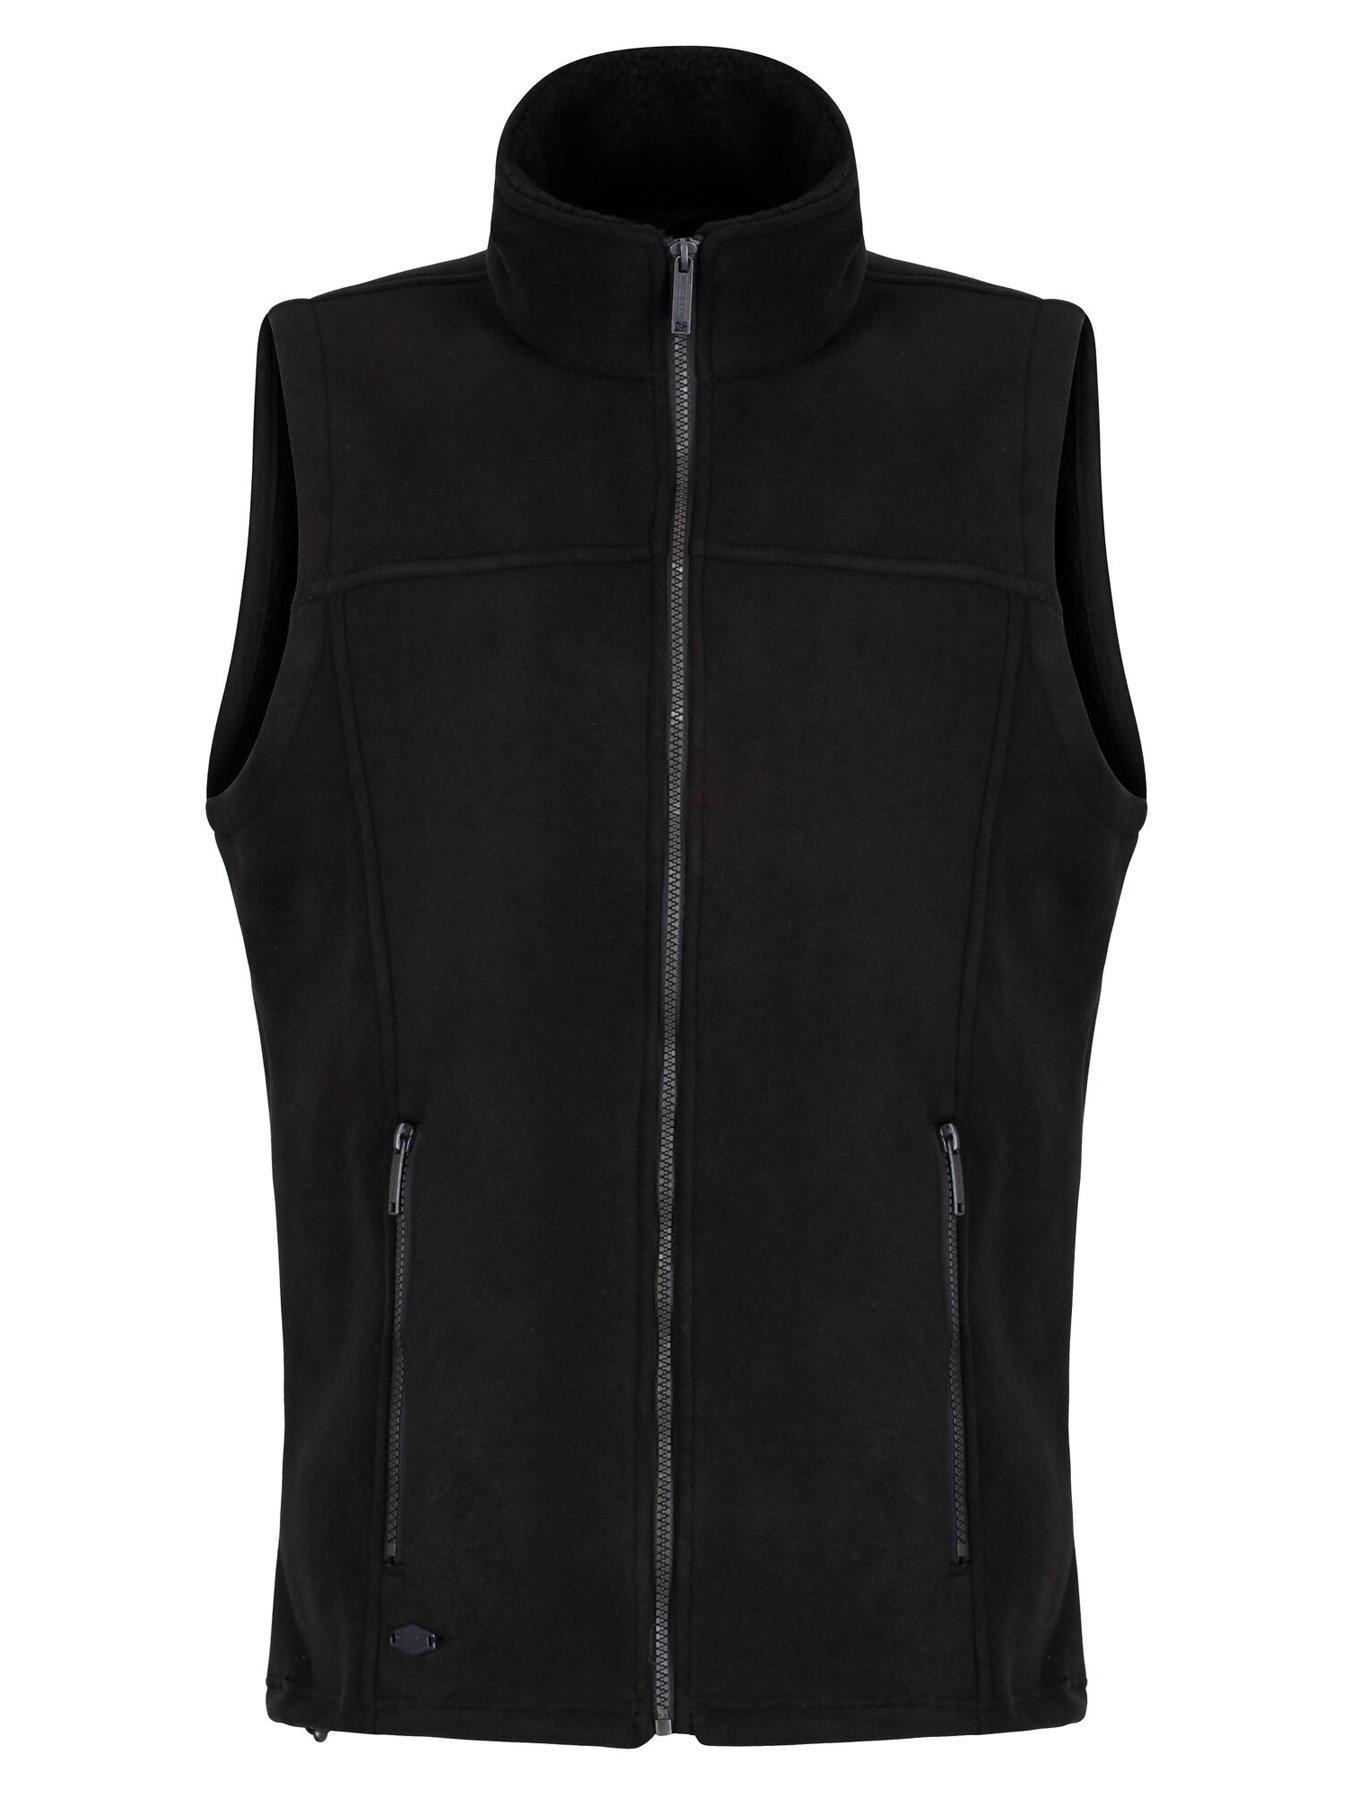 Coats & Jackets Radburn Bodywarmer - Black